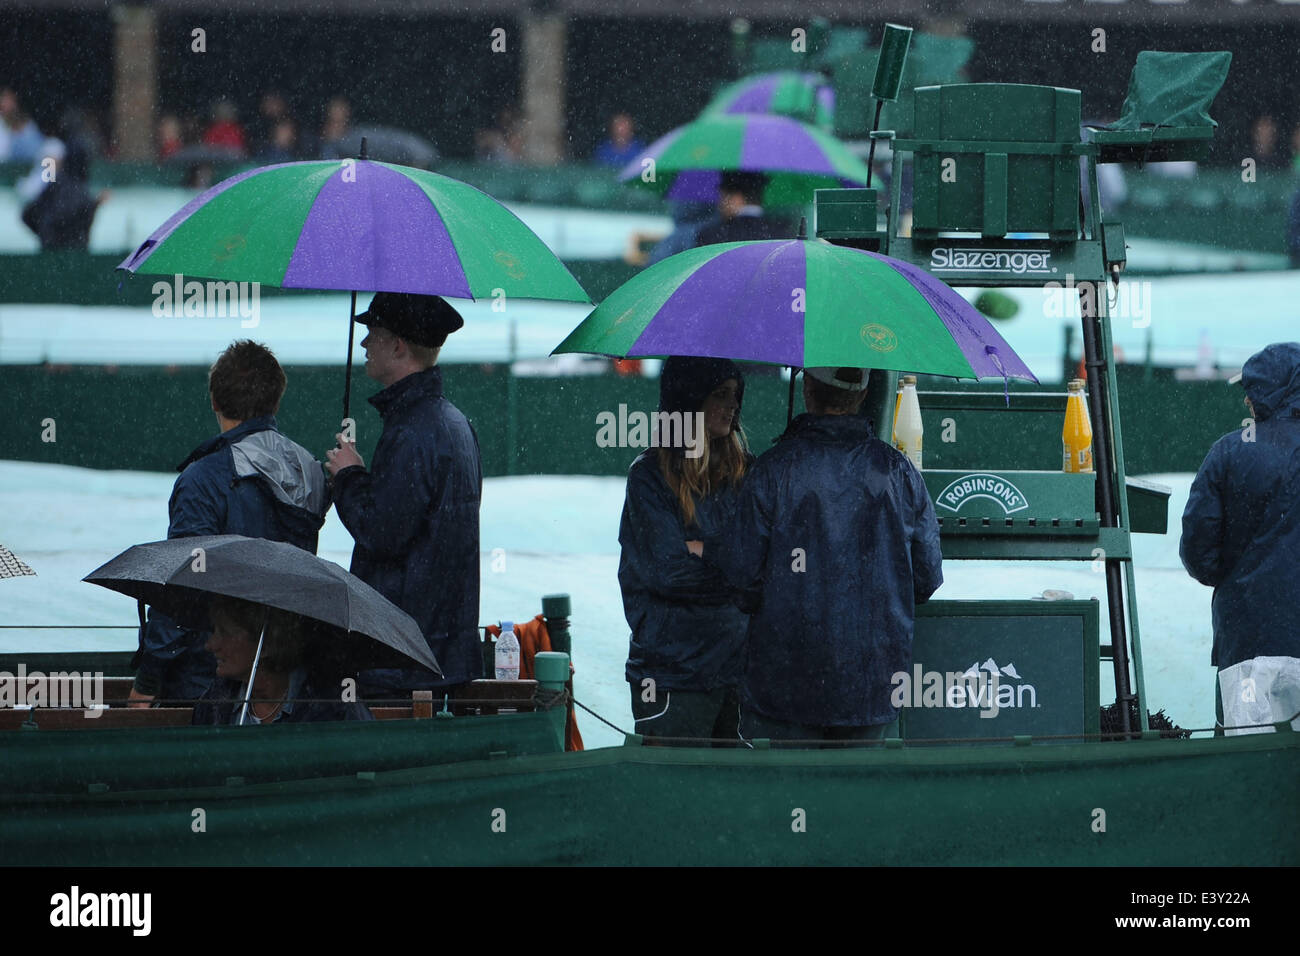 28.06.2014. Wimbledon, Londres, Inglaterra, el día 6 de la AELTC campeones de Wimbledon. La lluvia detiene la reproducción como el personal y los espectadores encubrir. Foto de stock